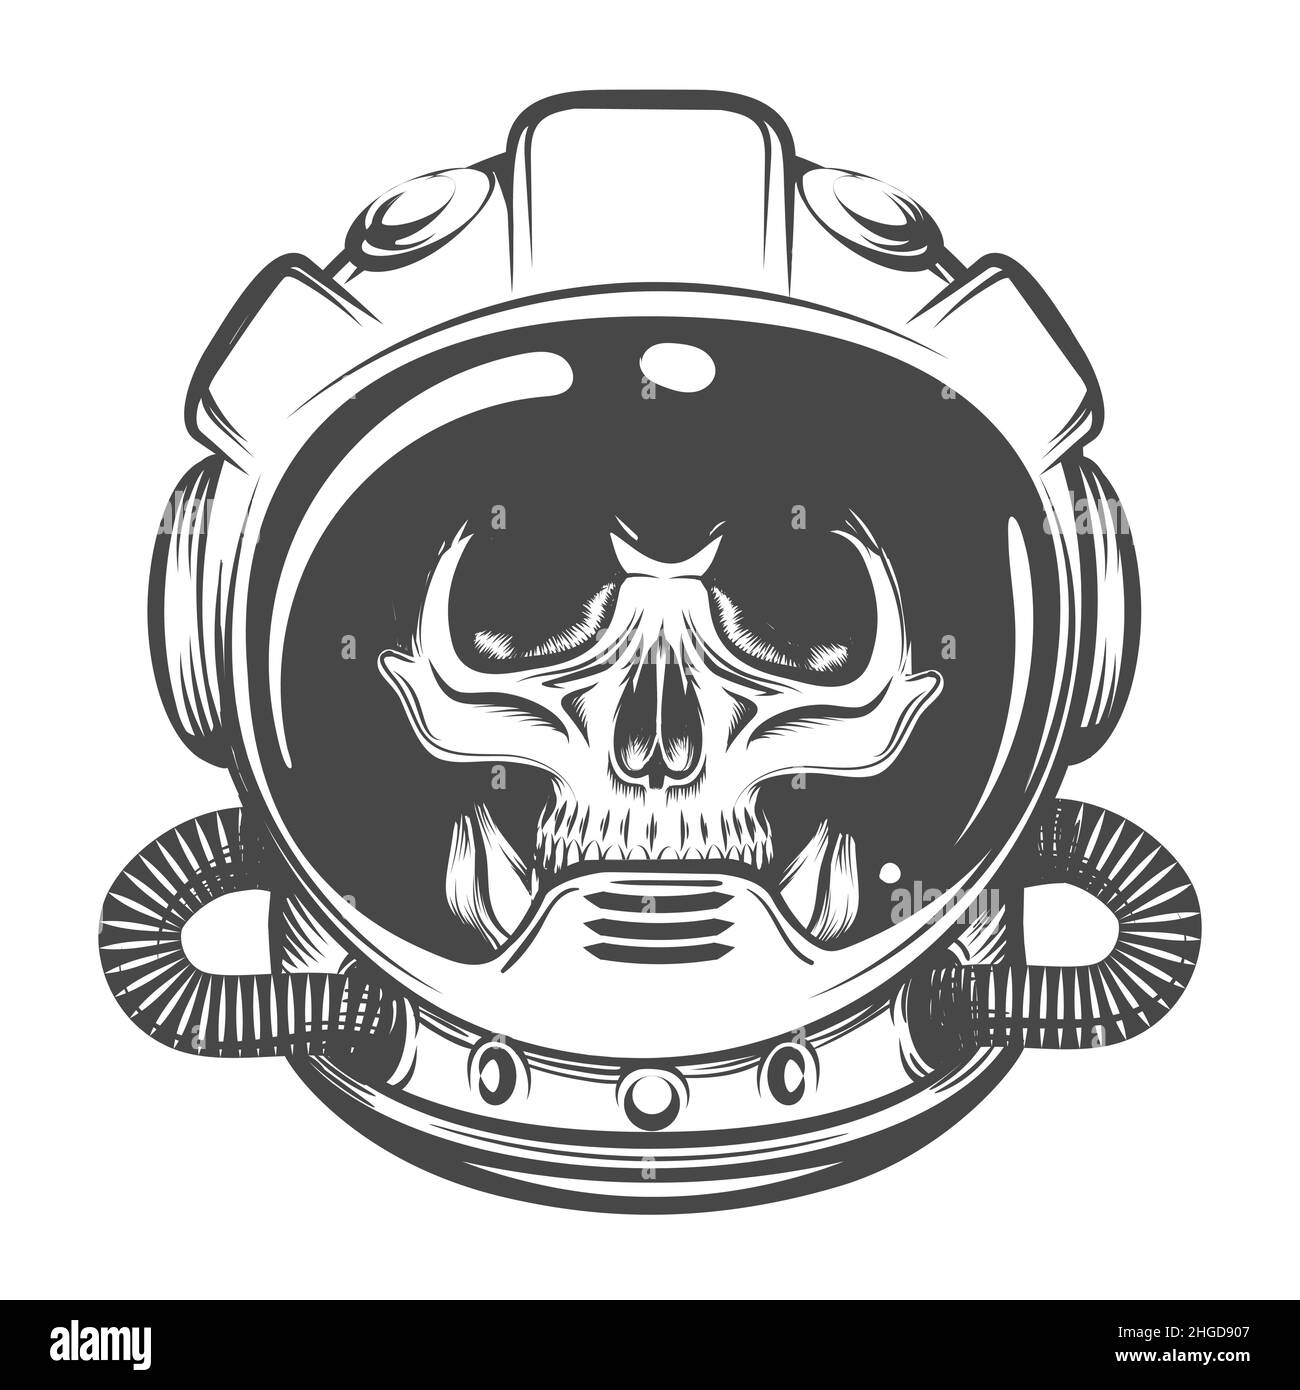 SVG, Vettoriale - Icona Di Stile Disegnato Casco Astronauta. Image